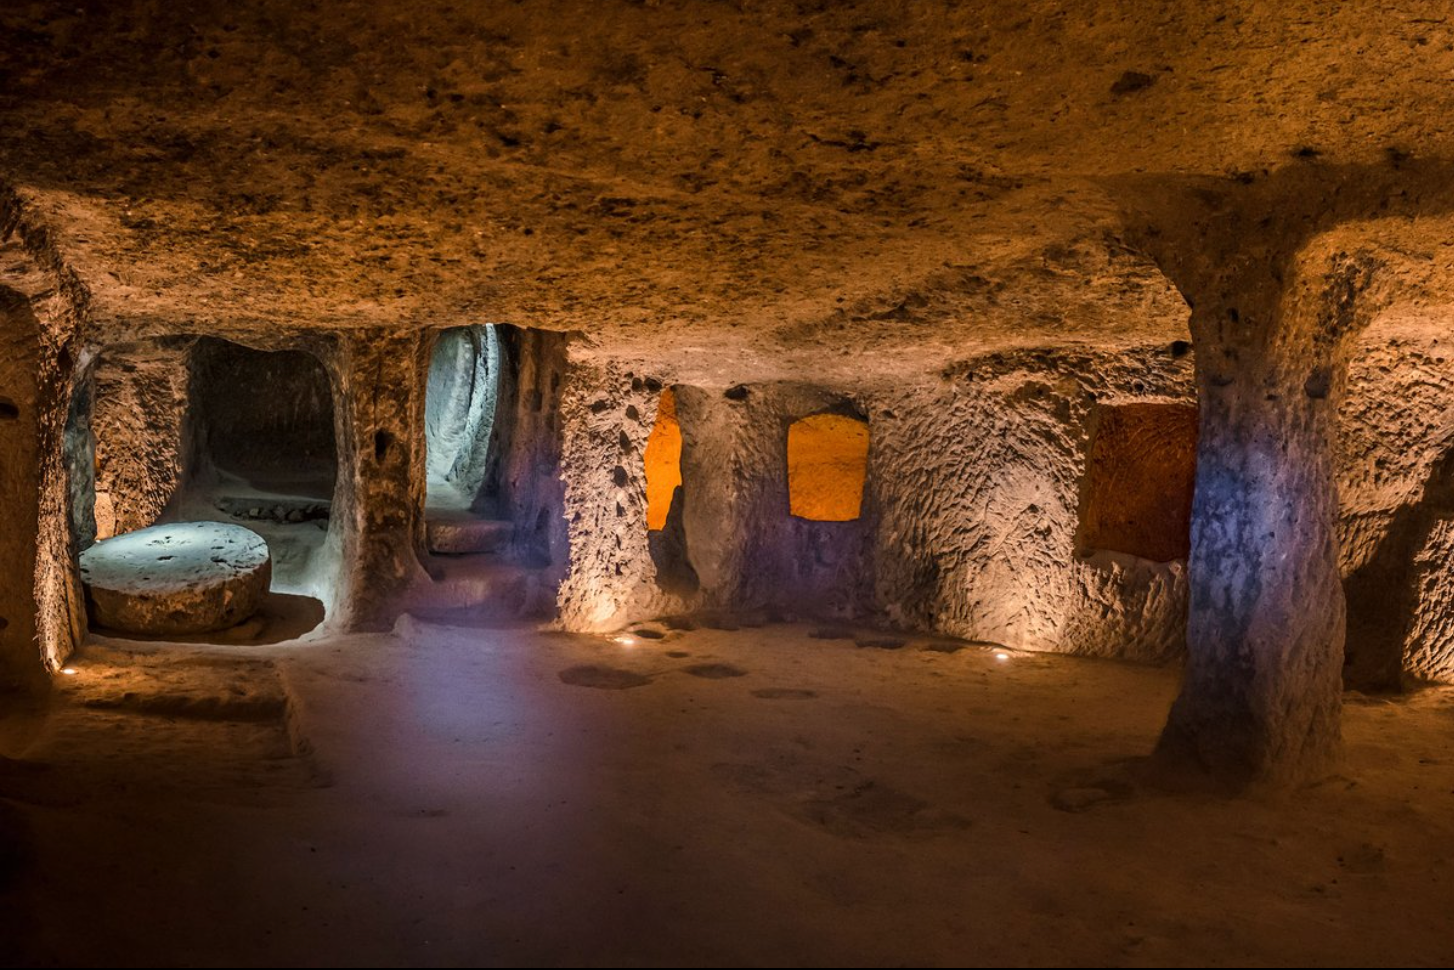 Phát hiện thành phố cổ đại siêu lớn ẩn sâu dưới lòng đất: Điều kỳ diệu ở phía dưới hầm - Ảnh 1.